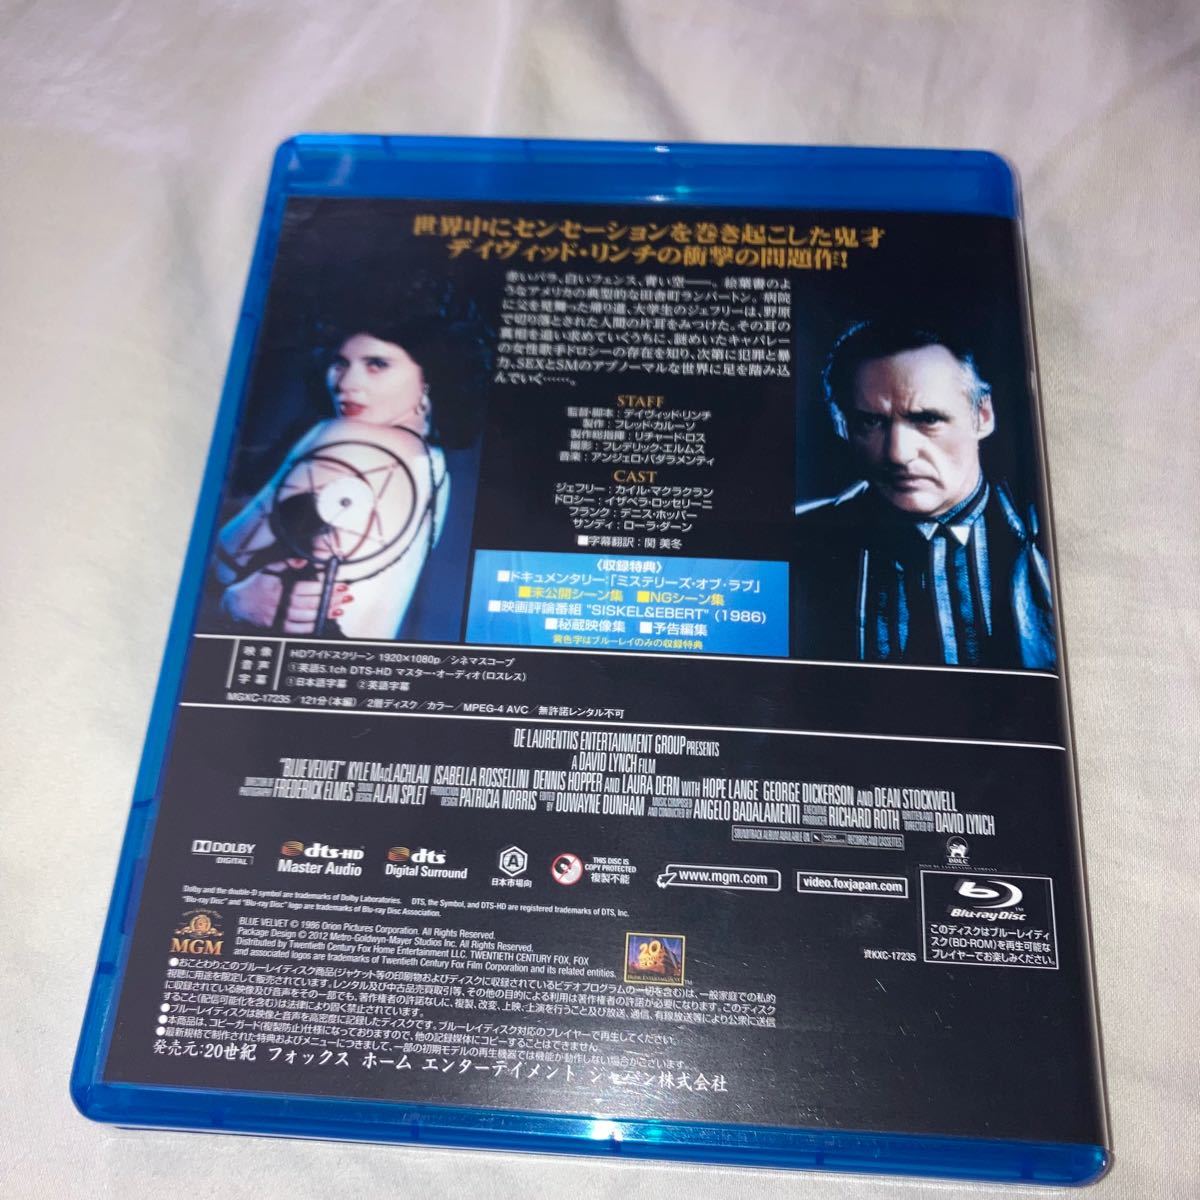 ブルーベルベット オリジナル無修正版 Blu-ray ブルーレイ